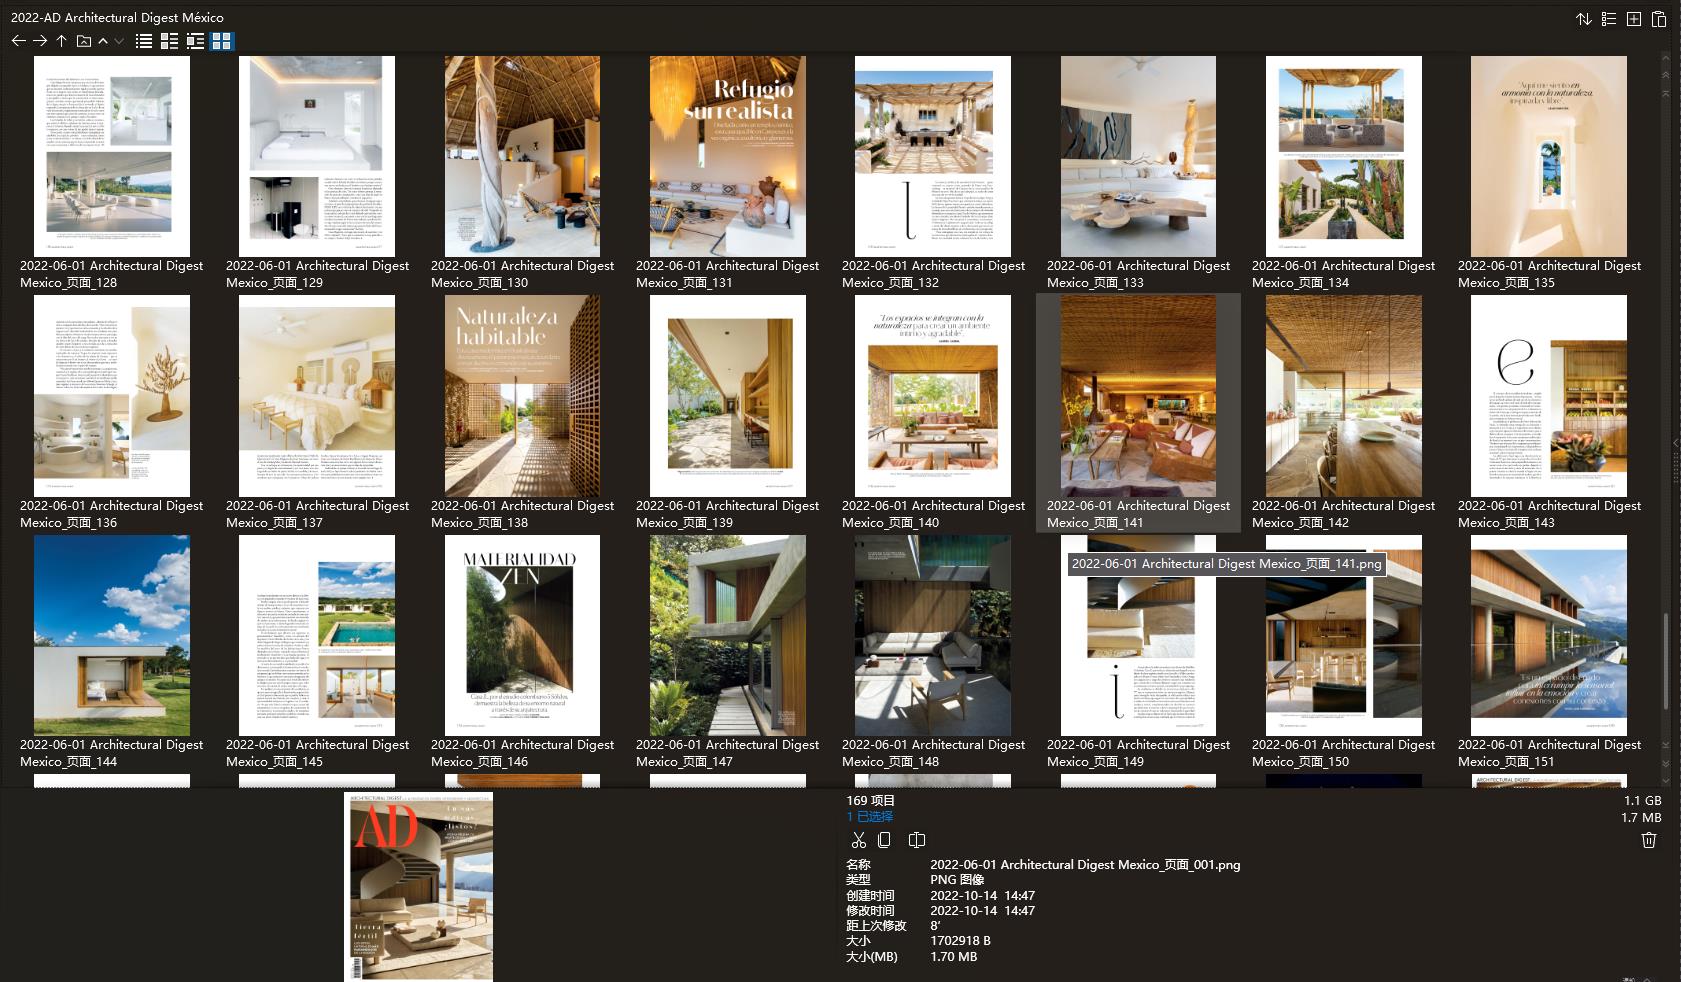 室内设计杂志AD Architectural Digest,软装设计杂志AD Architectural Digest,室内设计杂志,软装设计杂志,AD设计电子杂志,杂志下载,AD杂志合集,安邸,安邸杂志